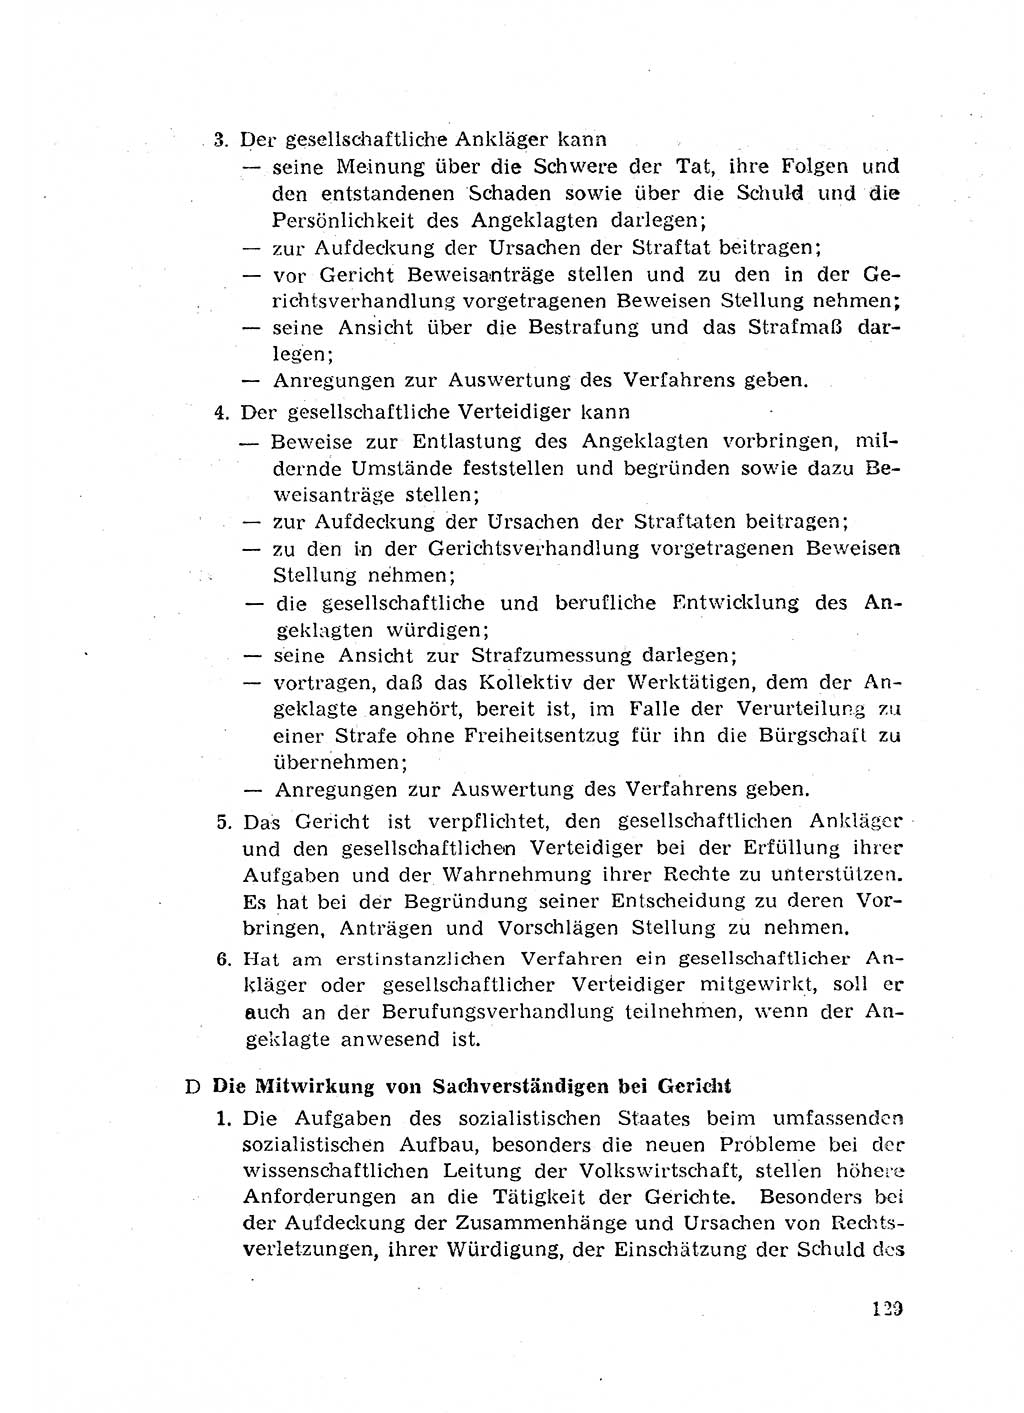 Rechtspflegeerlaß [Deutsche Demokratische Republik (DDR)] 1963, Seite 129 (R.-Pfl.-Erl. DDR 1963, S. 129)